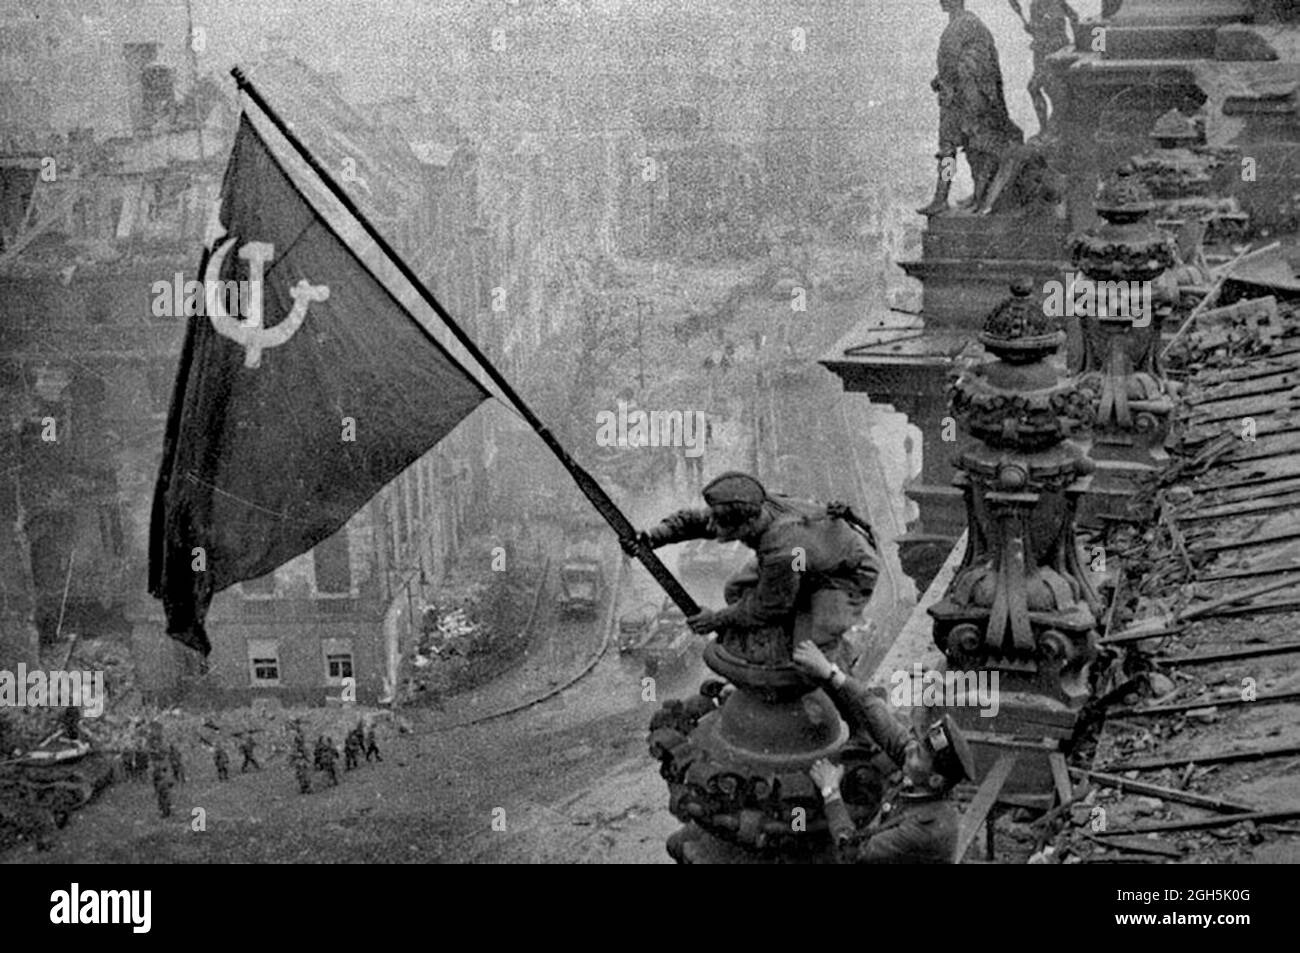 Un soldato sovietico che alza la bandiera rossa comunista sul Reichstag a Berlino, aprile 1945. Questa è la foto senza doctoring - gli uomini hanno un orologio su ogni polso. Le versioni successive, censurate dal governo sovietico, hanno fatto rimuovere dalla foto questi orologi rubati. Foto Stock